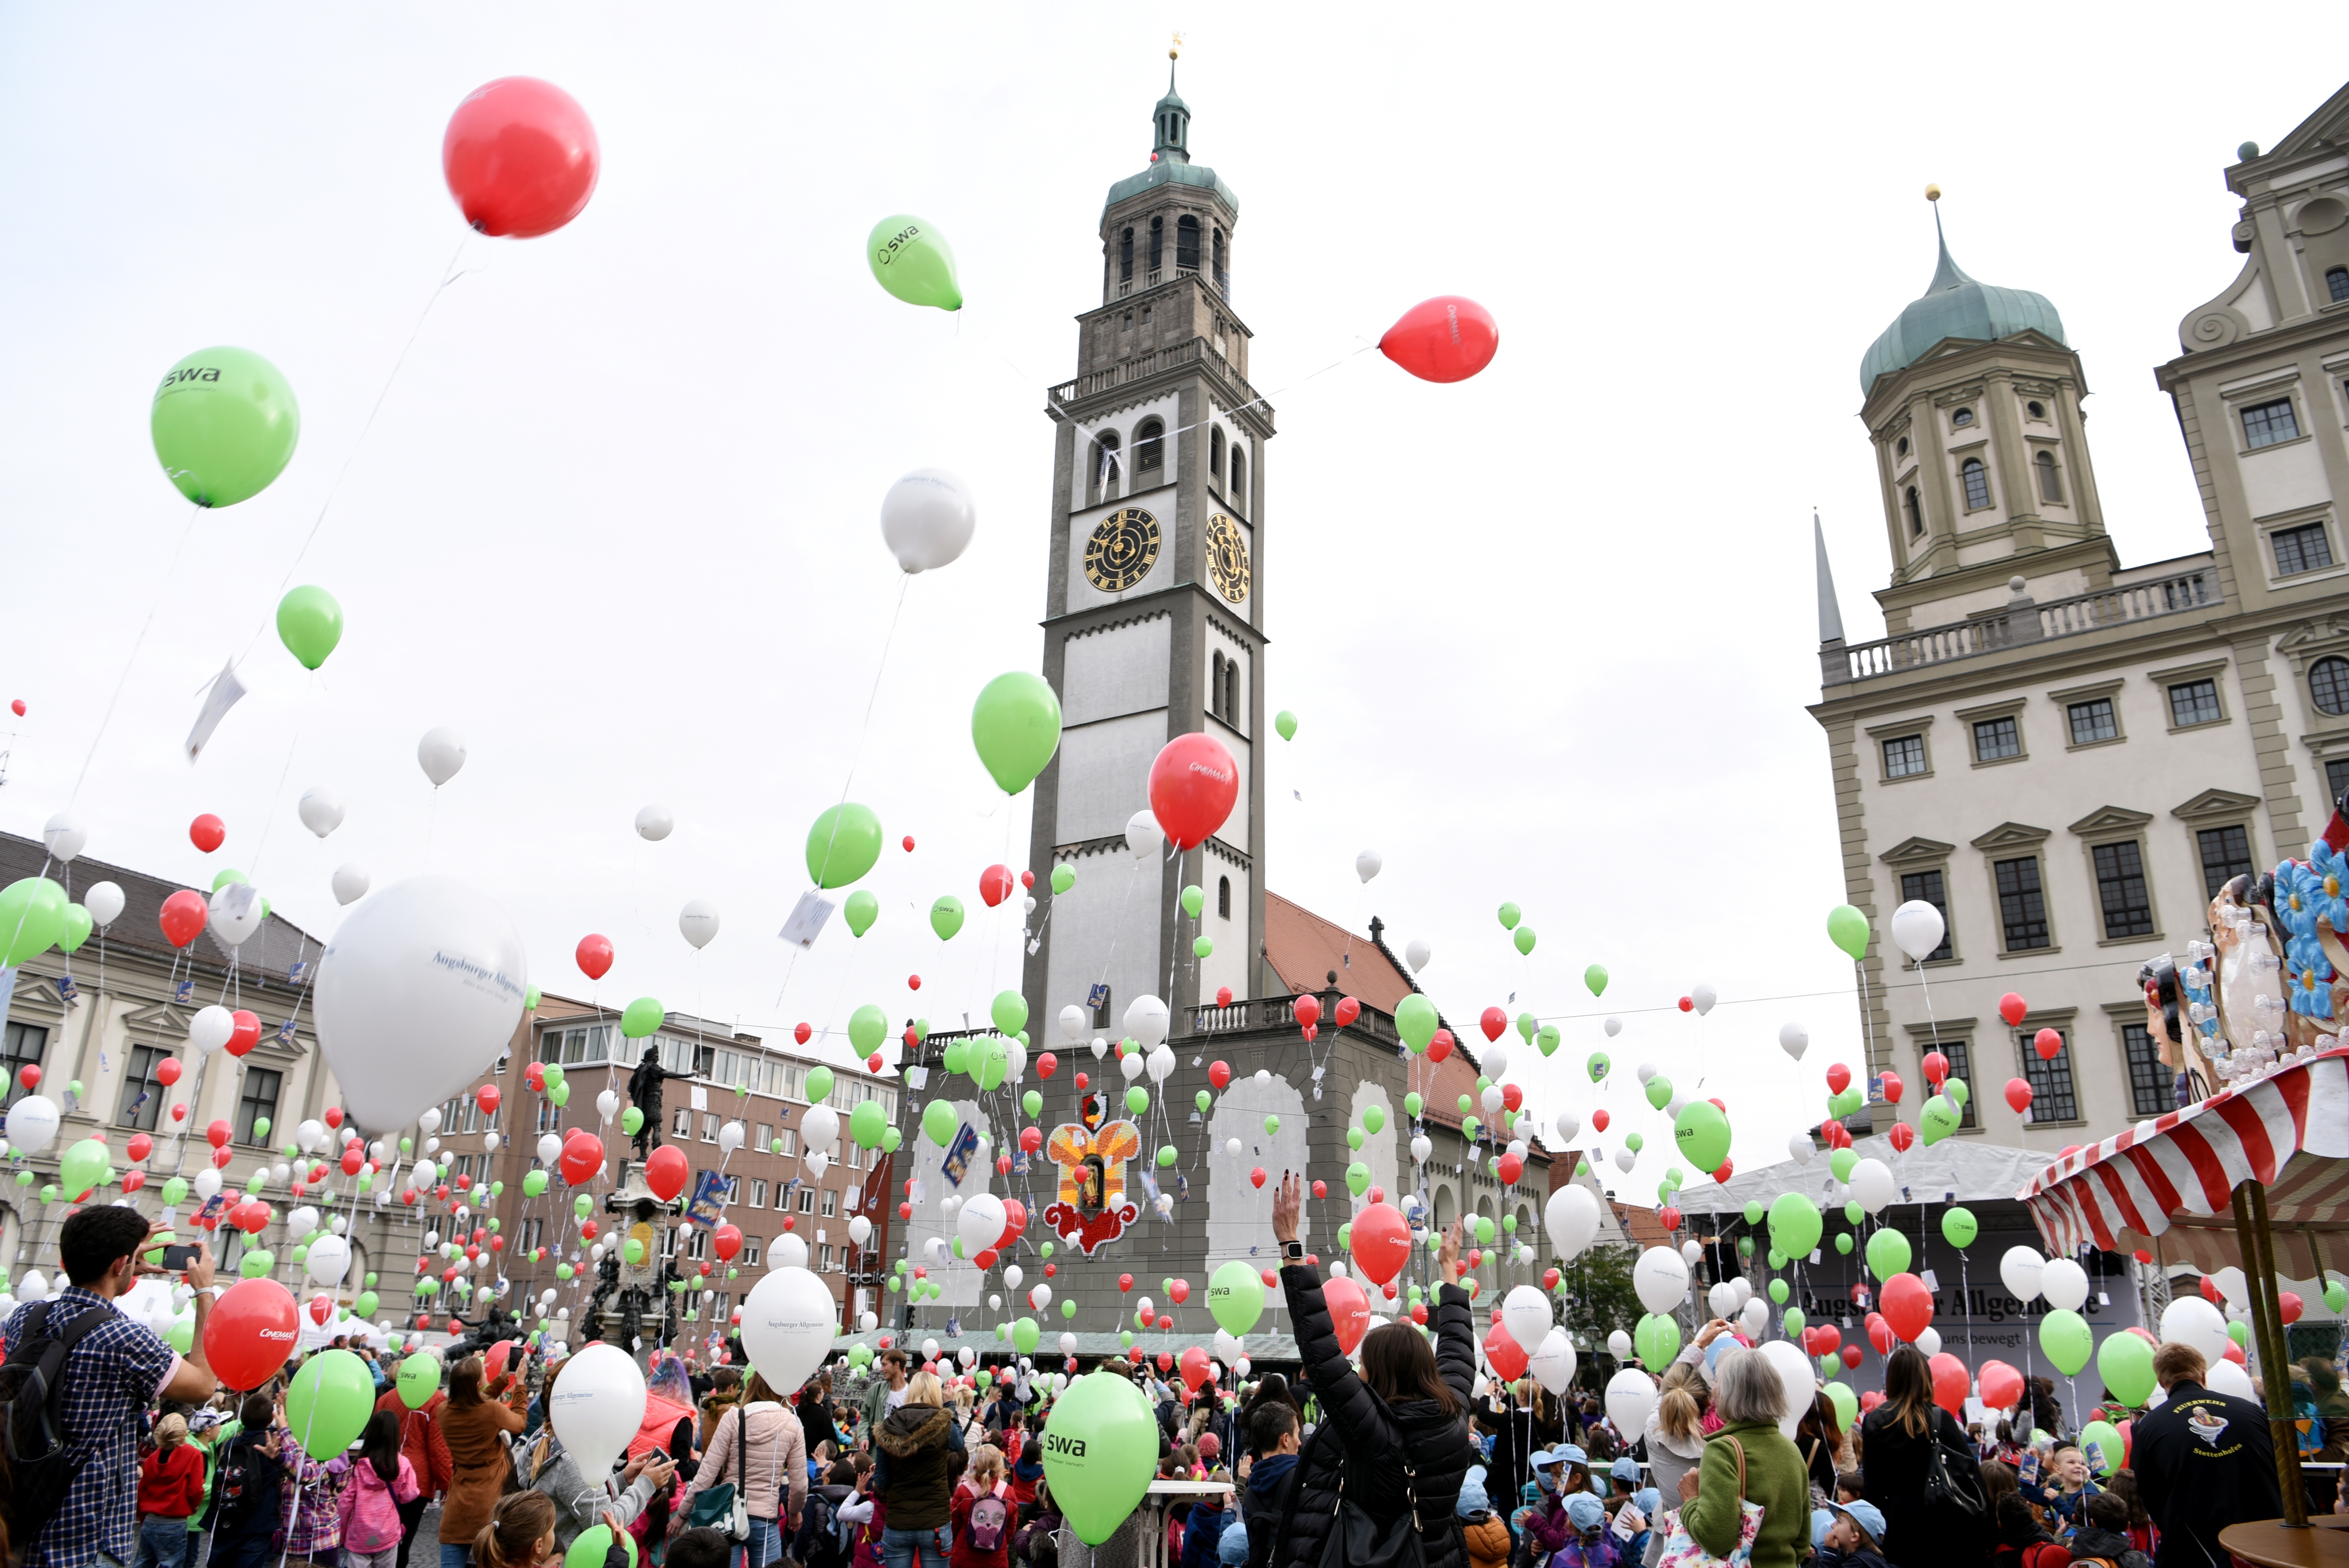 Hunderte Kinder stehen auf dem Rathausplatz, während das Turamichele in einem Fenster des Rathauses zu sehen ist. Die Kinder lassen Luftballons in den Farben Rot, Grün und Weiß steigen.